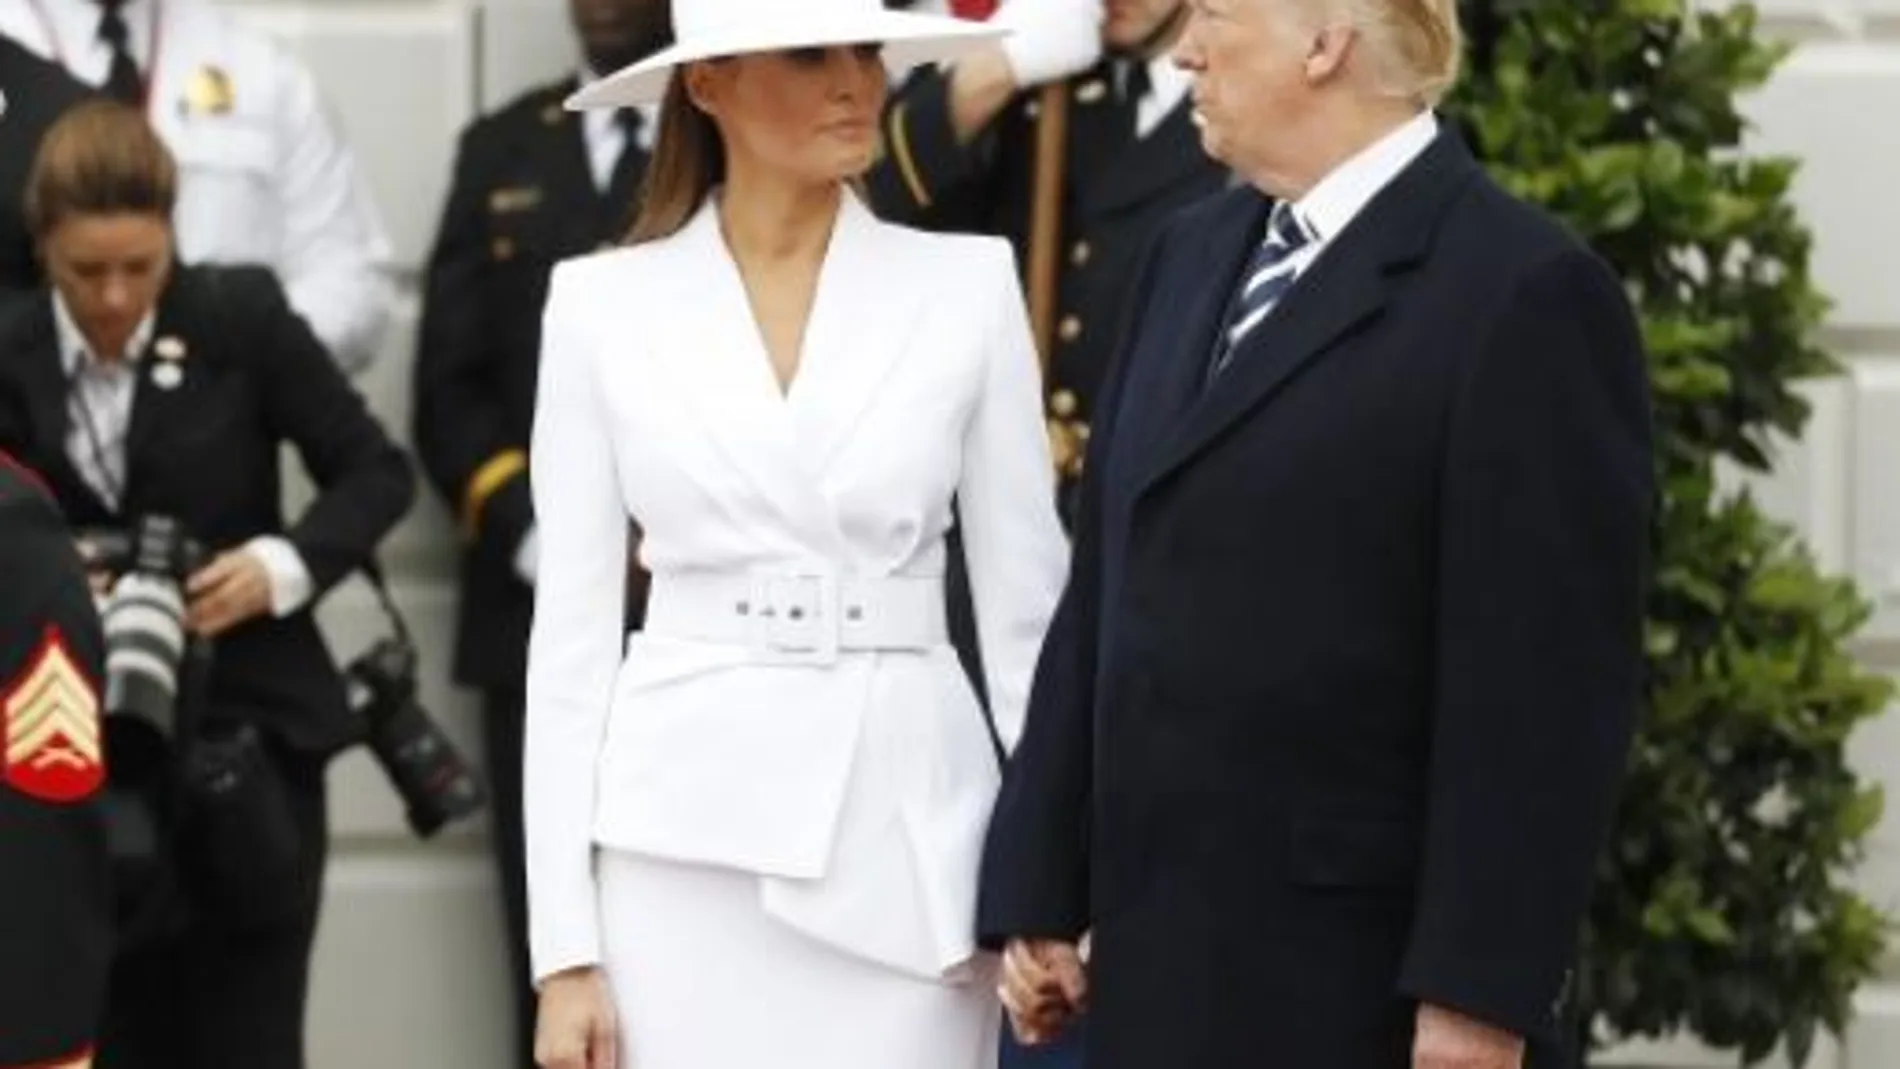 Melania y Donald Trump durante la visita de Emmanuel Macron a Washington